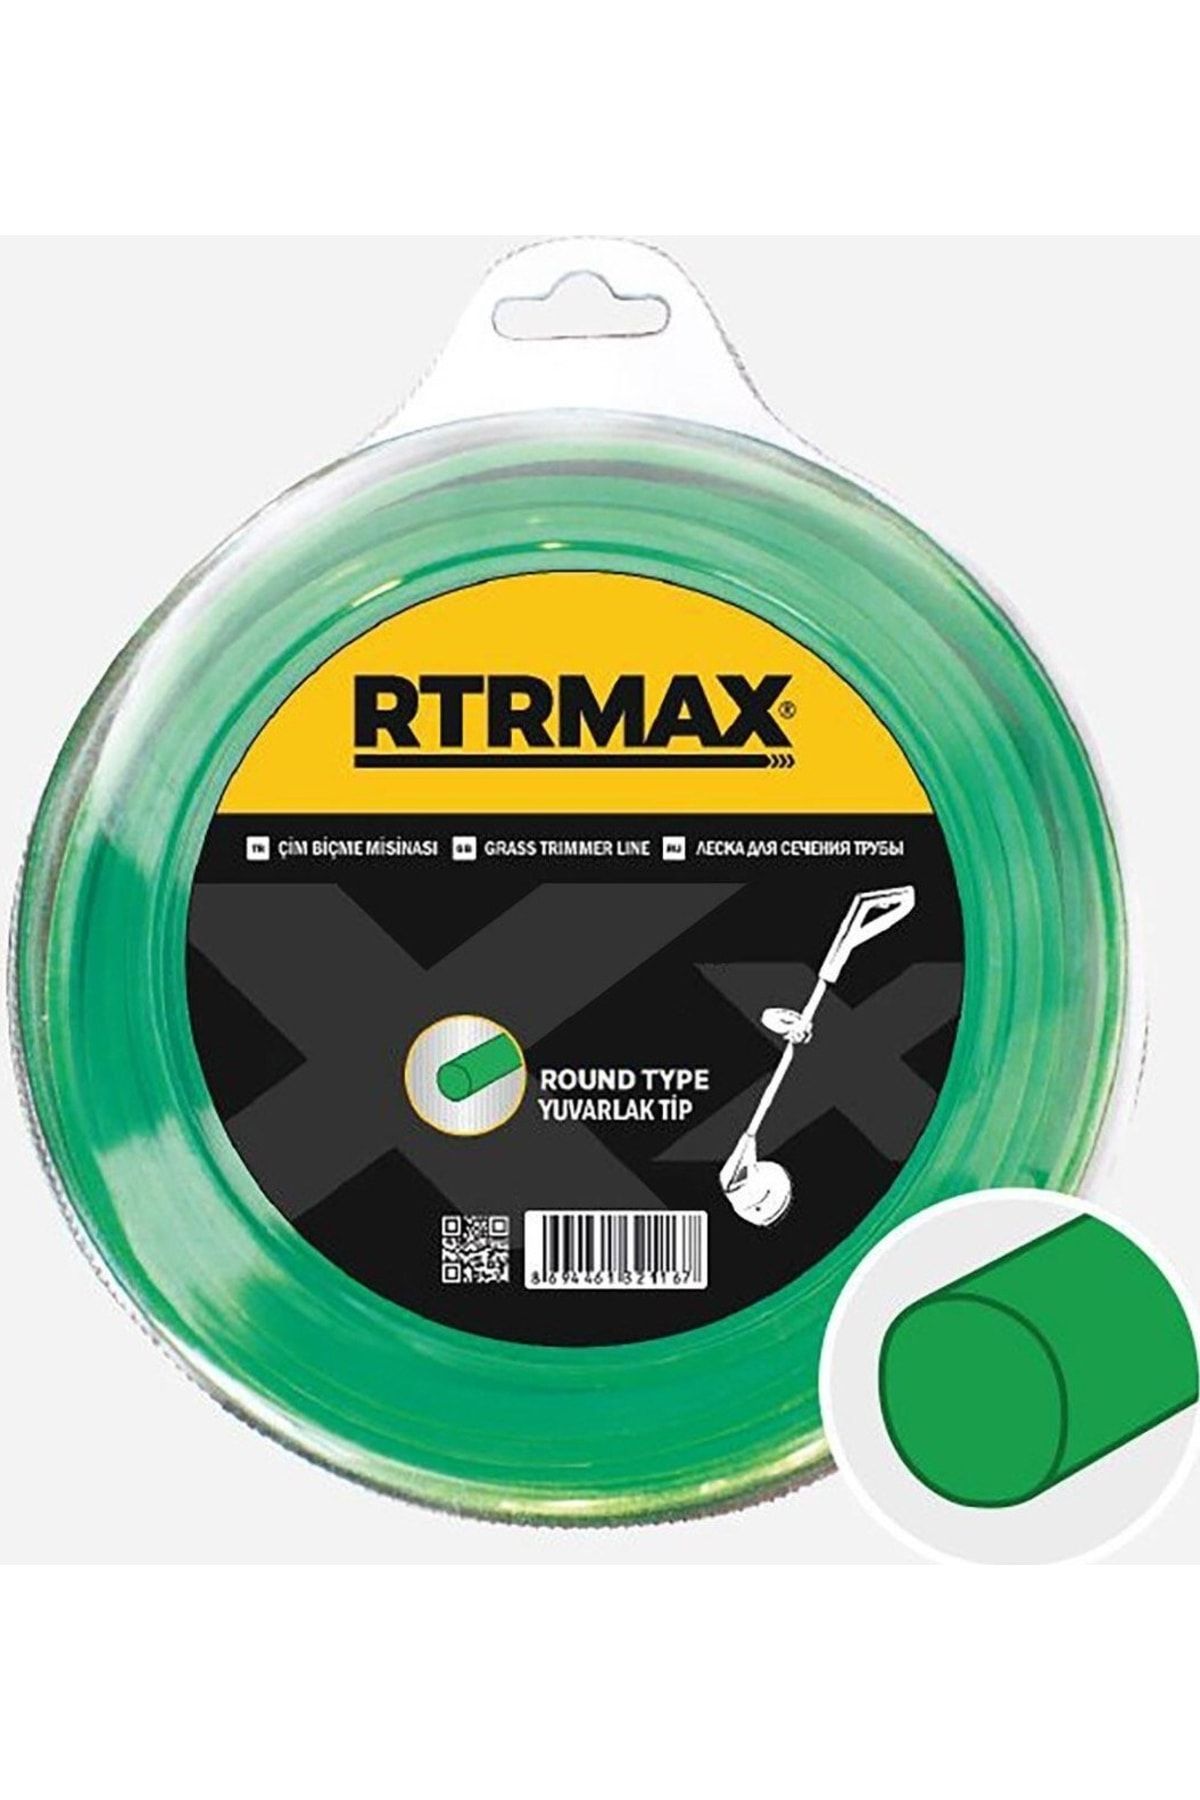 Rtrmax Yeşil Yuvarlak Tırpan Misinası 3.3 mm 46 m